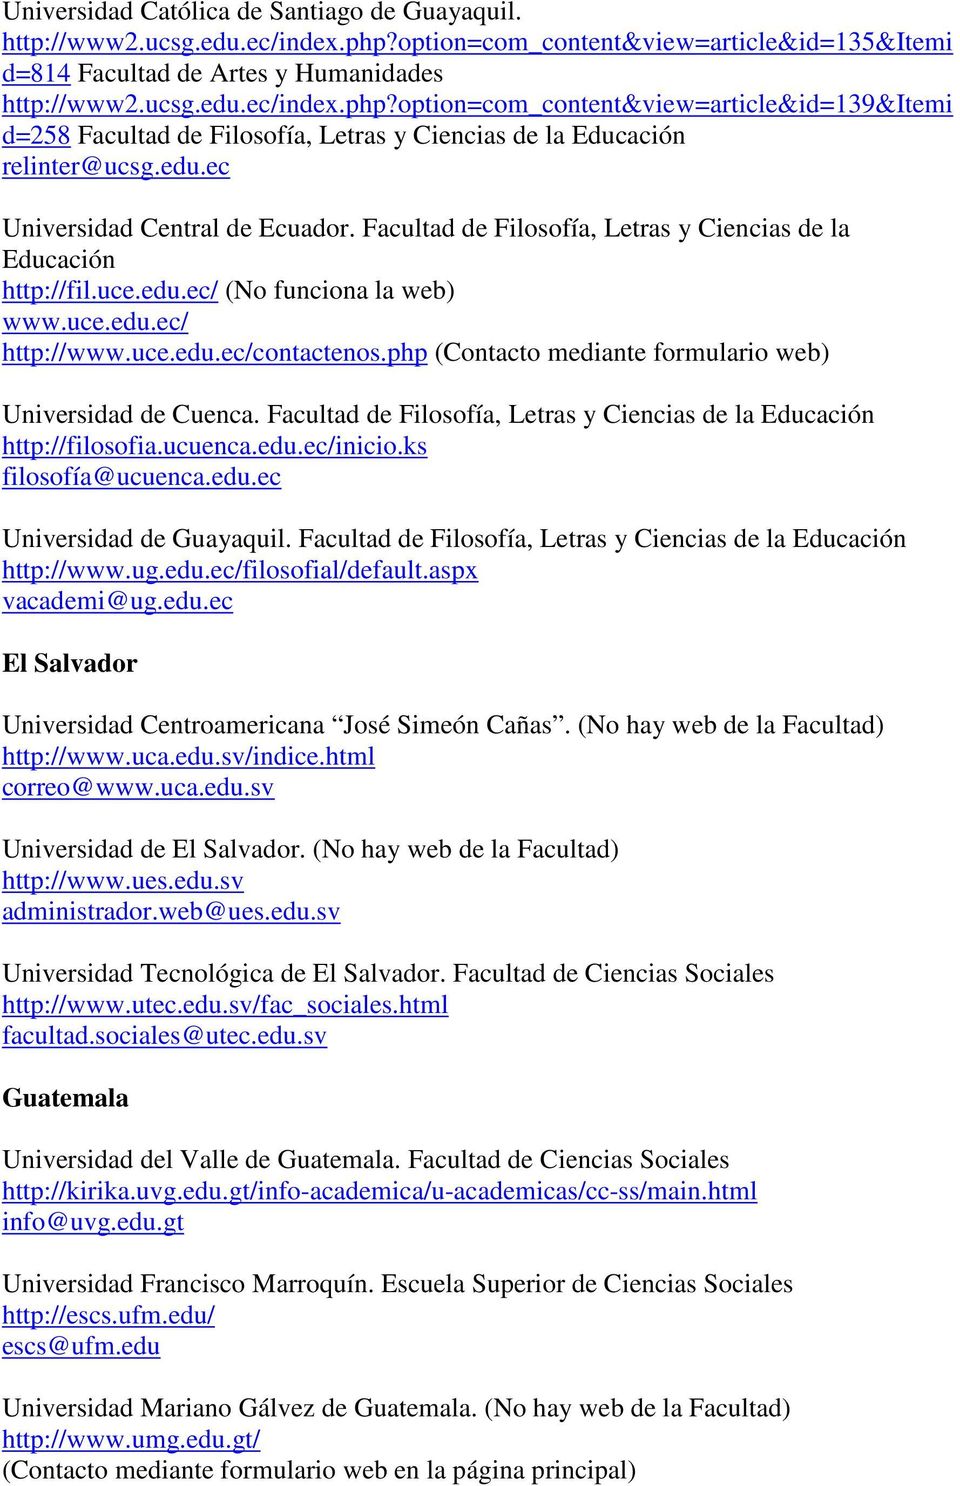 option=com_content&view=article&id=139&itemi d=258 Facultad de Filosofía, Letras y Ciencias de la Educación relinter@ucsg.edu.ec Universidad Central de Ecuador.